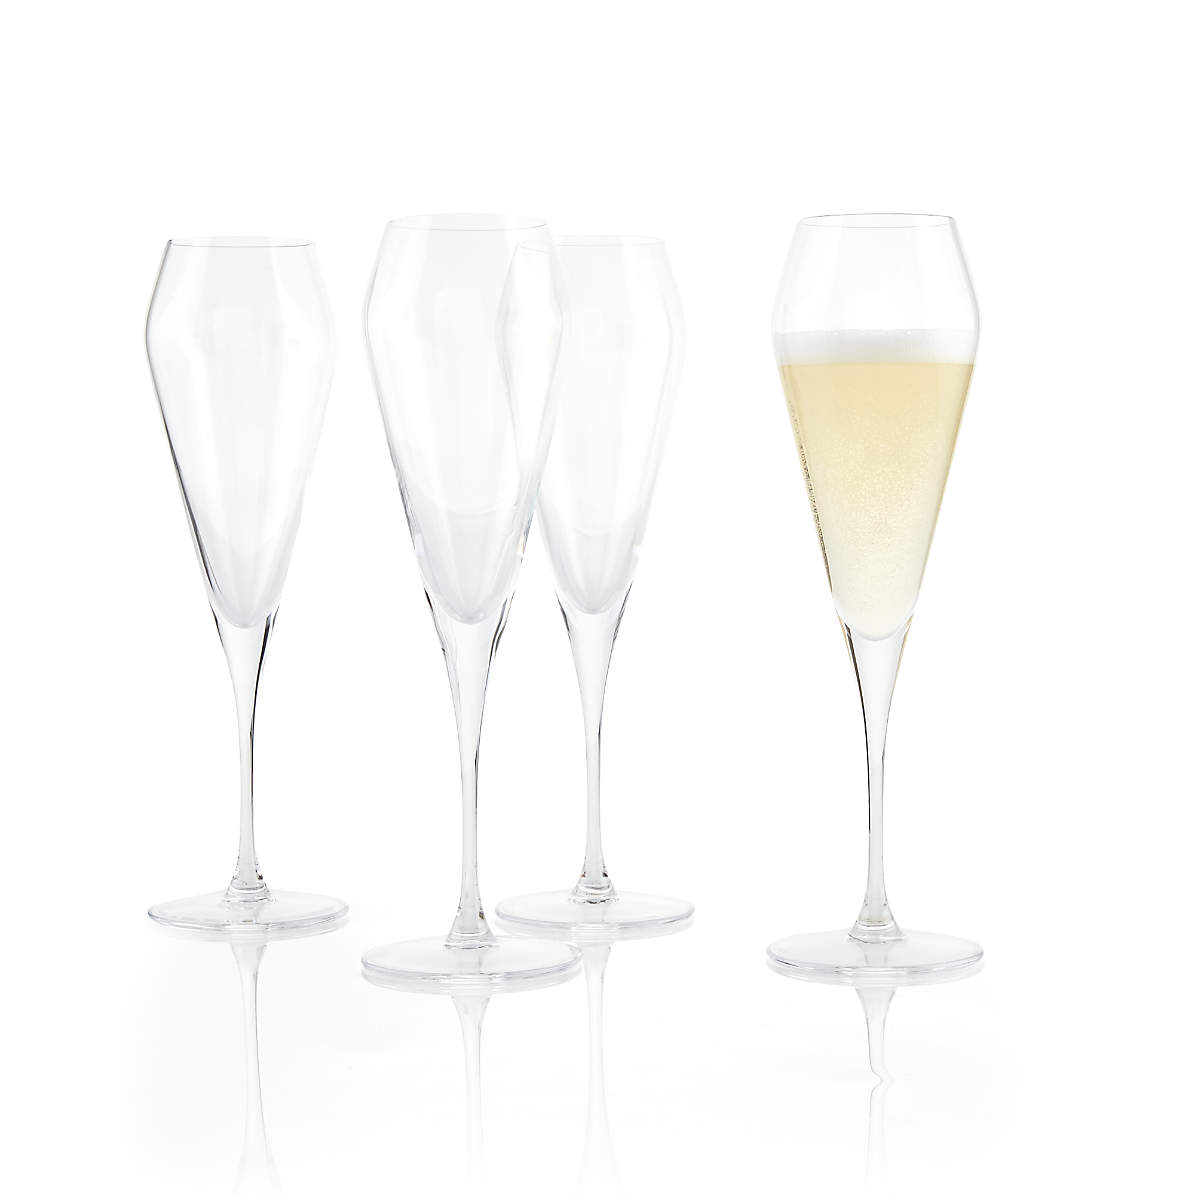 Spiegelau Willsberger 8.5 oz Champagne Flute (Set of 4)